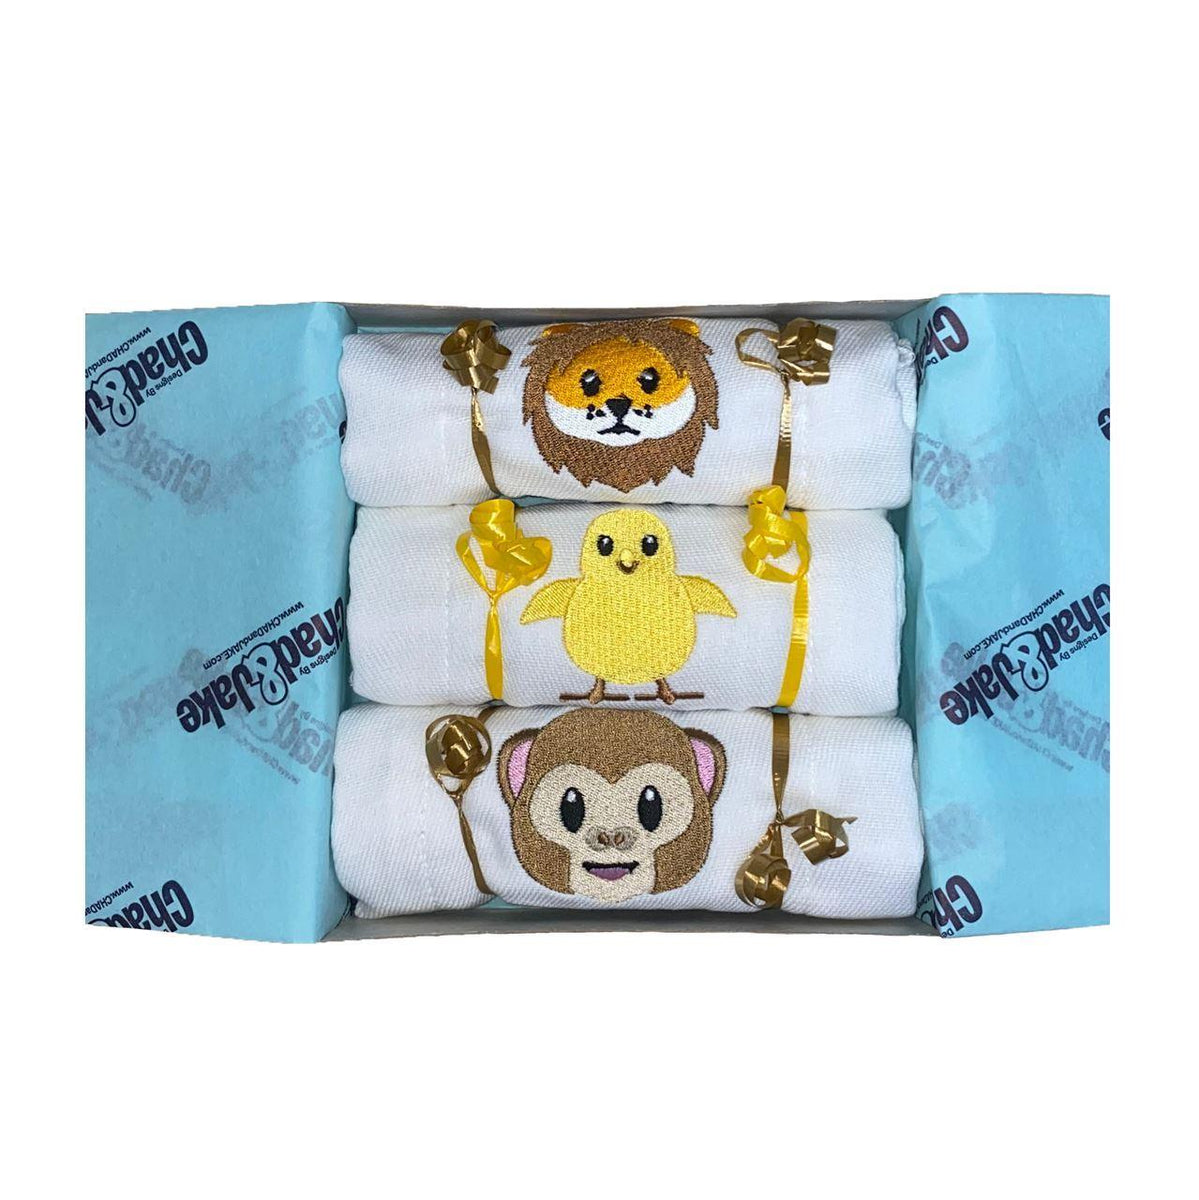 Monkey with Blanket Las Vegas Plush Souvenir